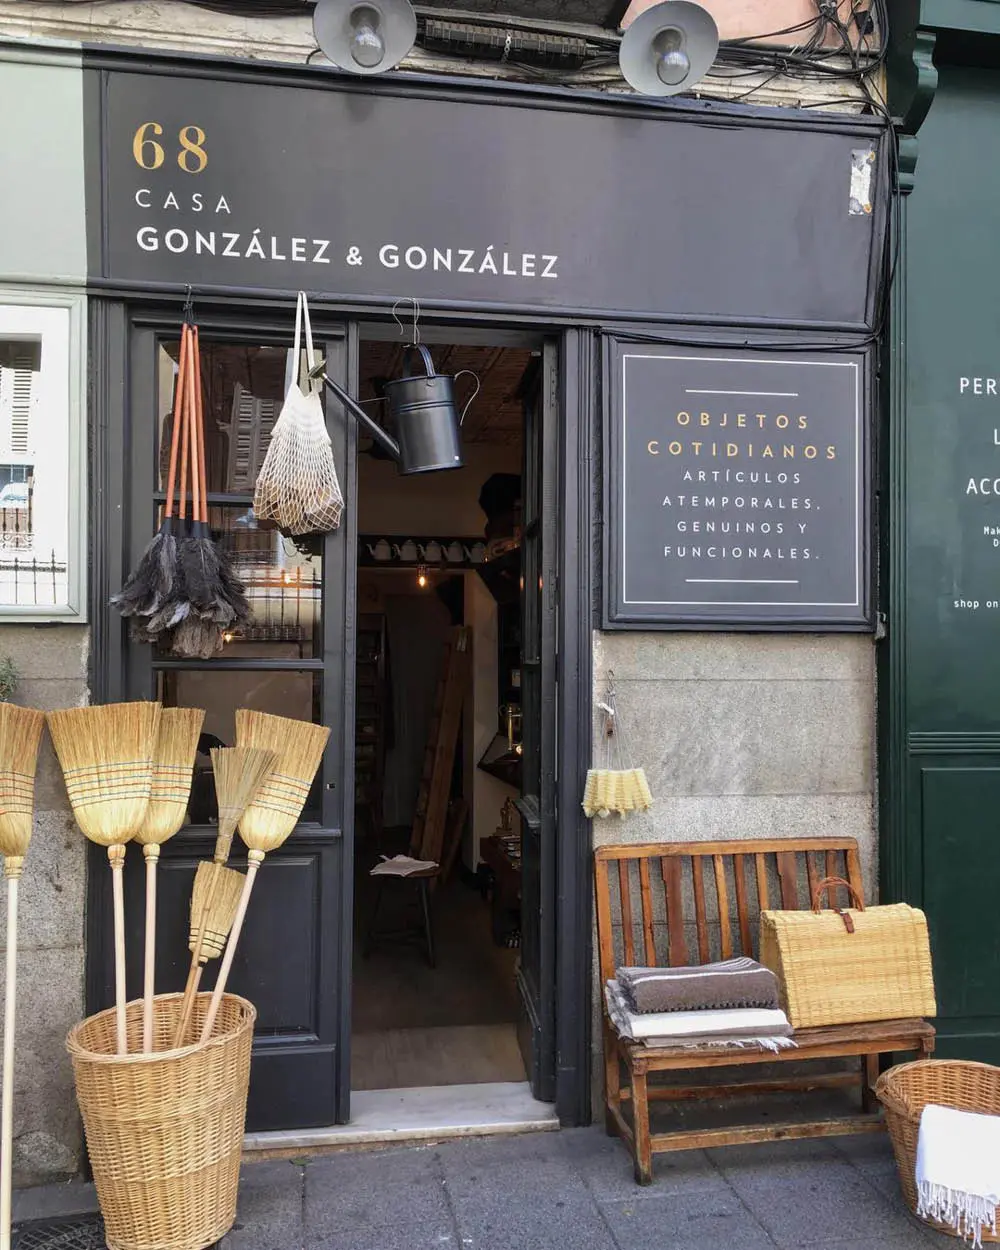 Casa González & González: objetos que contam histórias